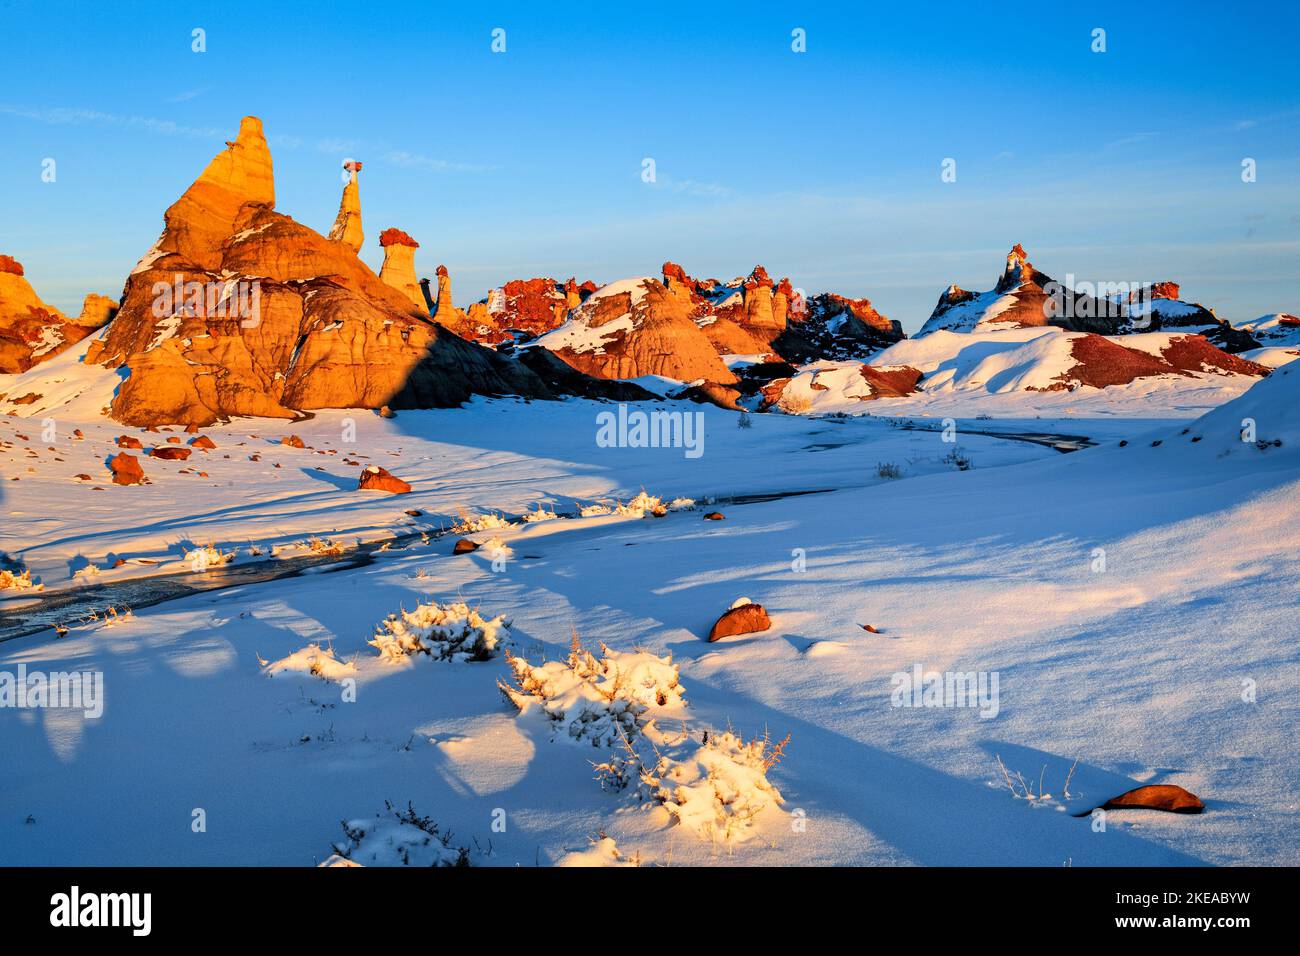 Bisti Badlands, Monolit und Gesteinsäule aus Lehm und Sandstein geformt, im Winter, Bisti Wilderness, New Mexico, USA, Nord Amerika Stock Photo